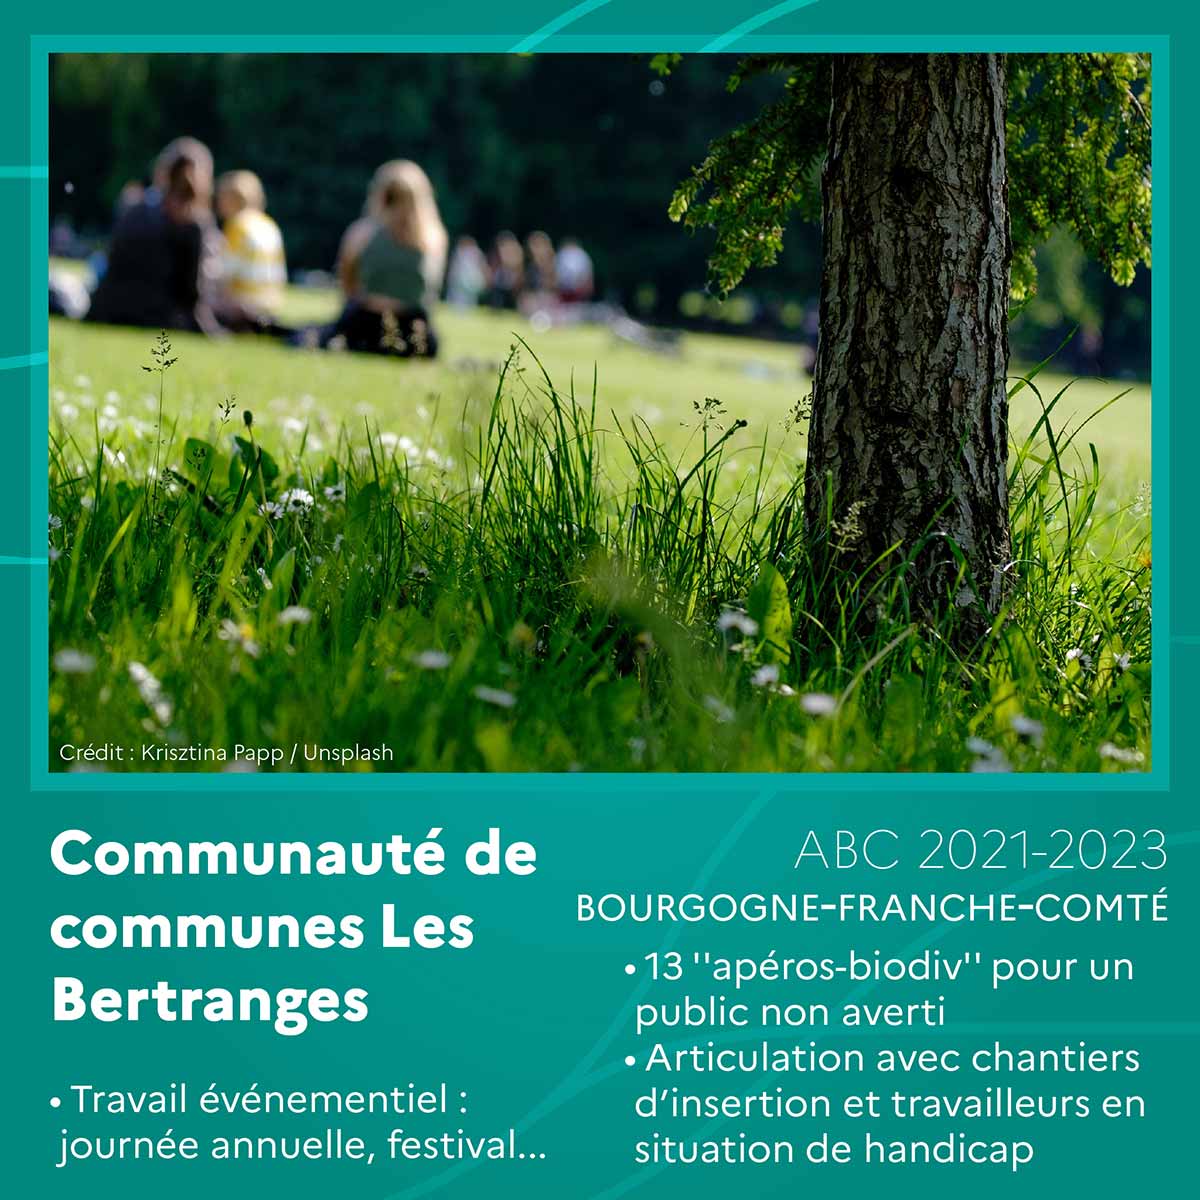 Communauté de communes Les Bertranges (Bourgogne-Franche-Comté)